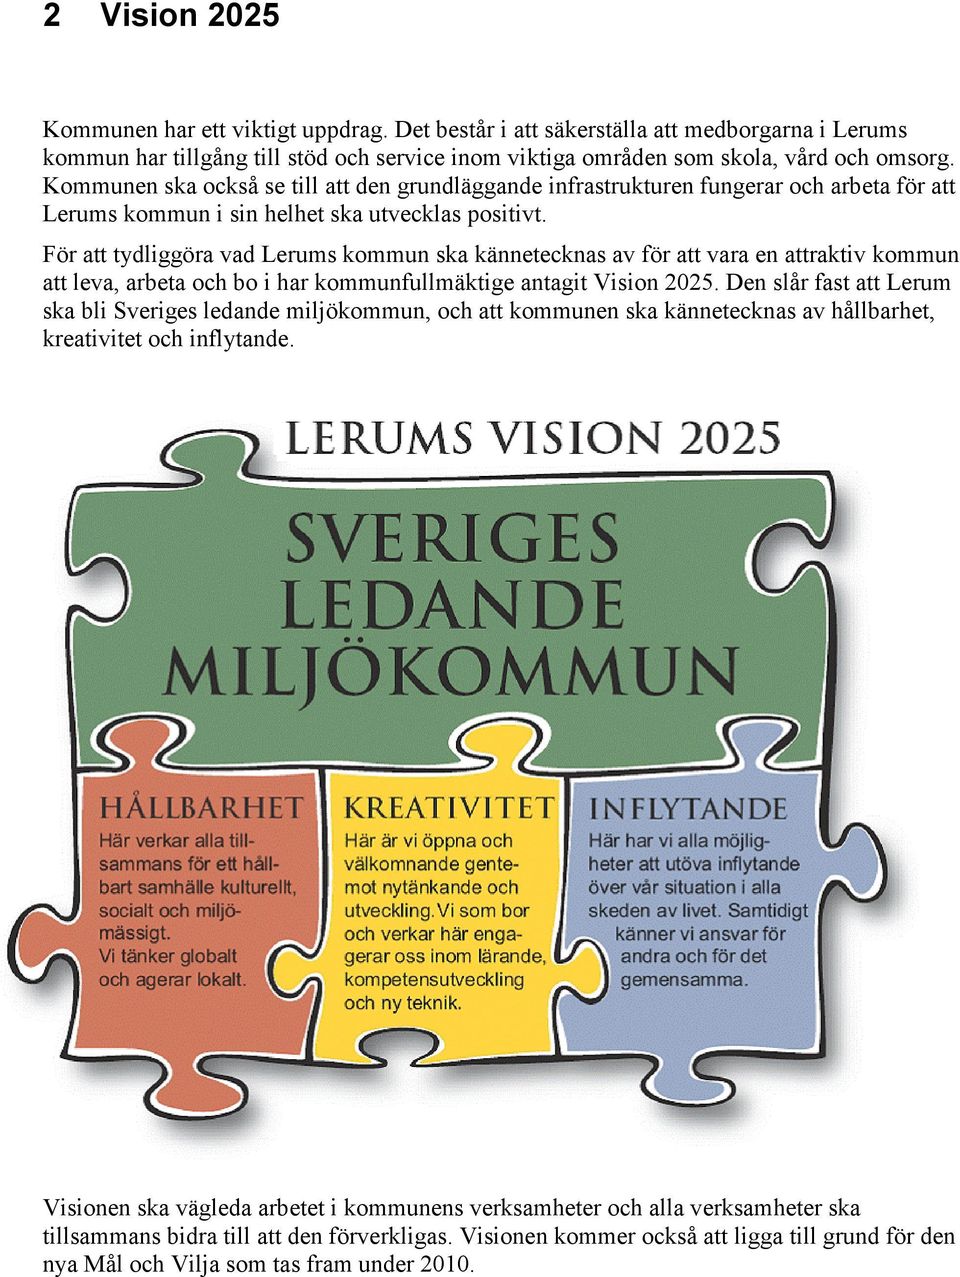 För att tydliggöra vad Lerums kommun ska kännetecknas av för att vara en attraktiv kommun att leva, arbeta och bo i har kommunfullmäktige antagit Vision 2025.